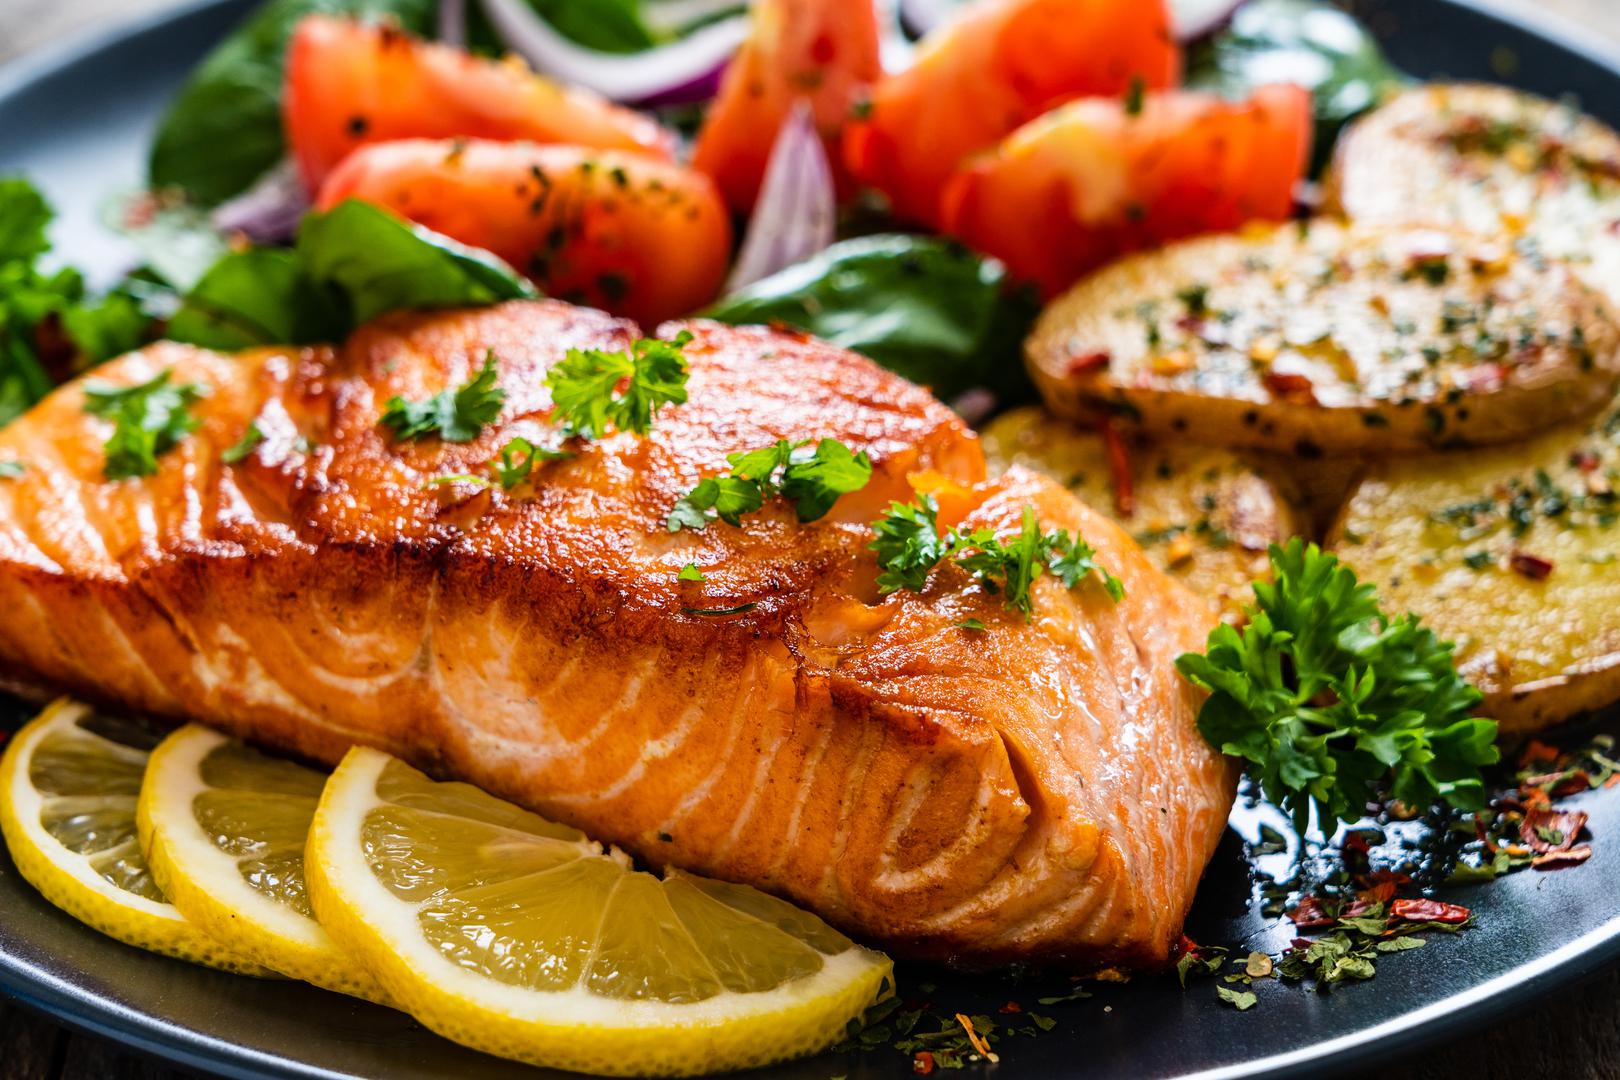 Riba: Riba sadrži omega-3 masne kiseline koje su neizostavne za svakoga tko ima problema sa srcem i krvožilnim sistemom. Nezasićene masne kiseline u ribi poboljšavaju tekuća svojstva krvi i sprječavaju sljepljivanje krvnih zrnaca. Osobama s povišenim krvnim tlakom preporučuje se jesti što masnija riba kao na primjer skuša, inčuni, sardina ili tuna i to dva puta tjedno. U prehranu možete dodati i riblje ulje koje blago smanjuje krvni pritisak te štiti krvne žile. Ako niste ljubitelj mora, omega-3 masne kiseline možete konzumirati u obliku tableta kao dodatak prehrani.